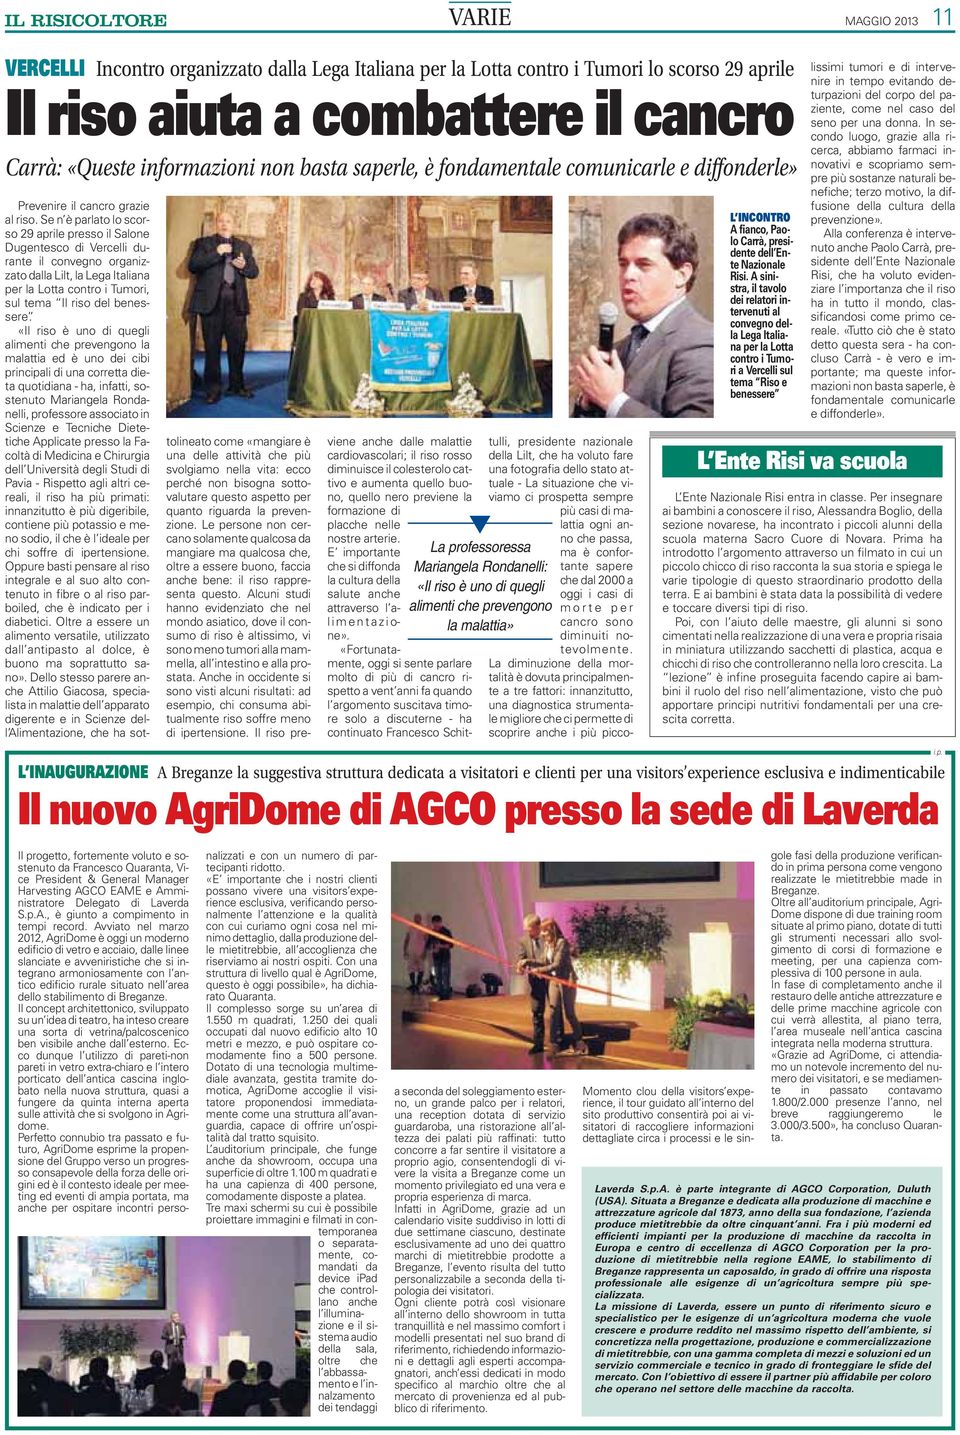 Se n è parlato lo scorso 29 aprile presso il Salone Dugentesco di Vercelli durante il convegno organizzato dalla Lilt, la Lega Italiana per la Lotta contro i Tumori, sul tema Il riso del benessere.